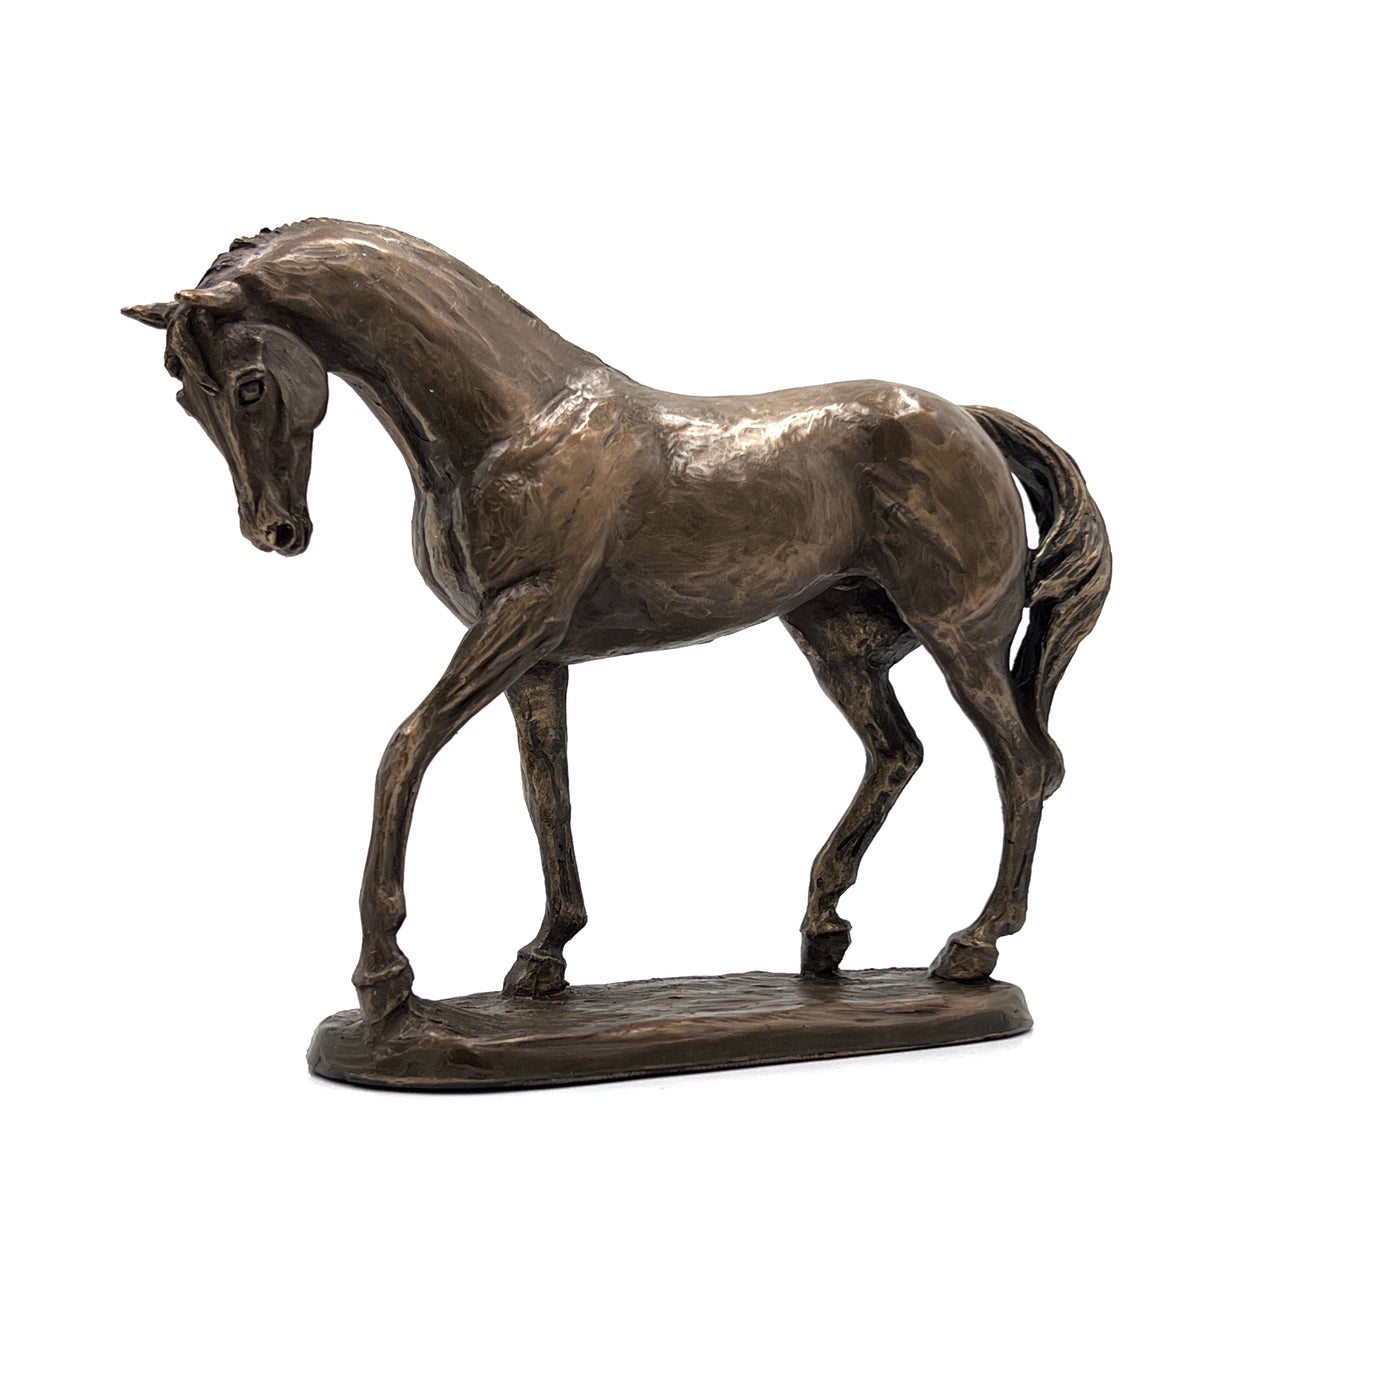 Cold Cast Bronze Horse Sculpture by Harriet Glen - Nobility - TwoBeeps.co.uk